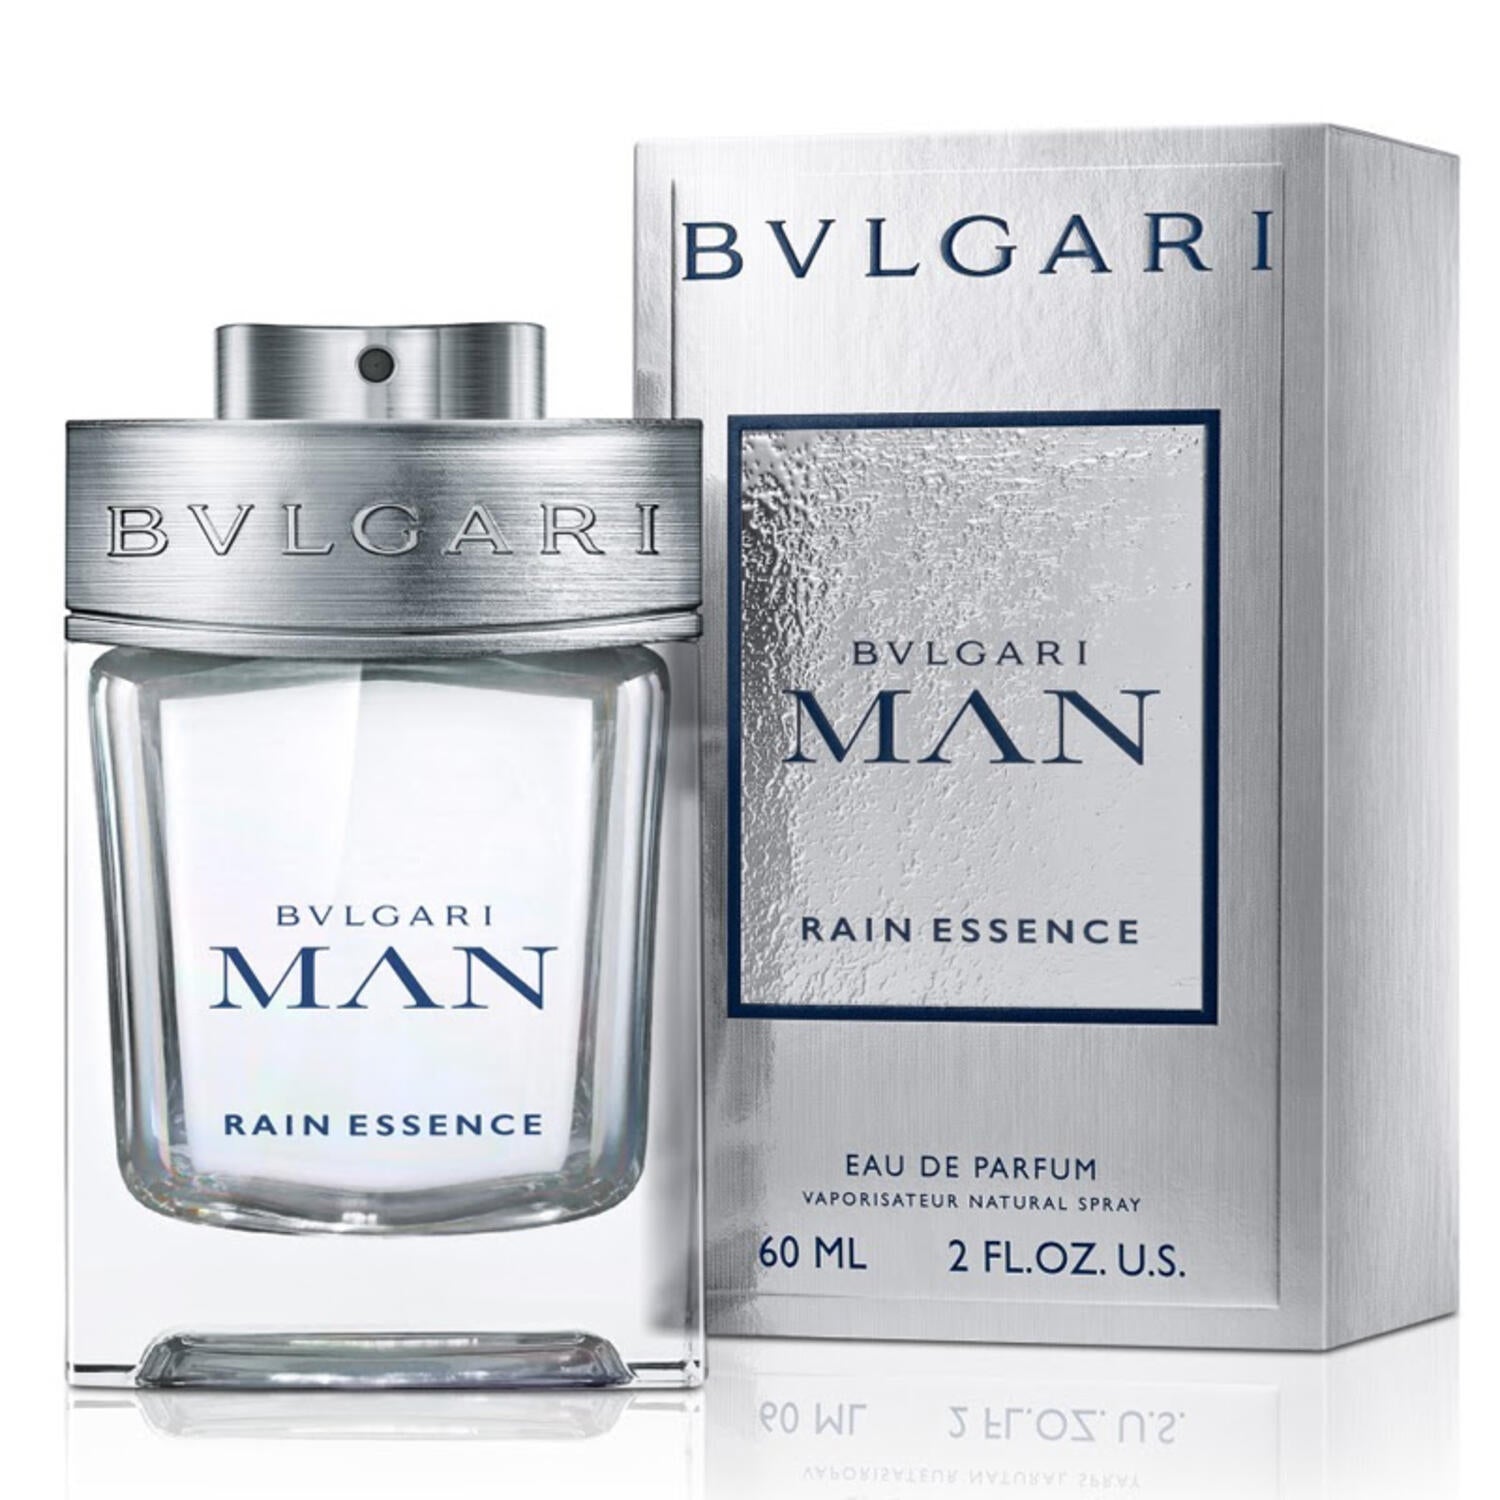 Man Rain Essence Eau de Parfum Spray for Men by Bvlgari, Product image 1